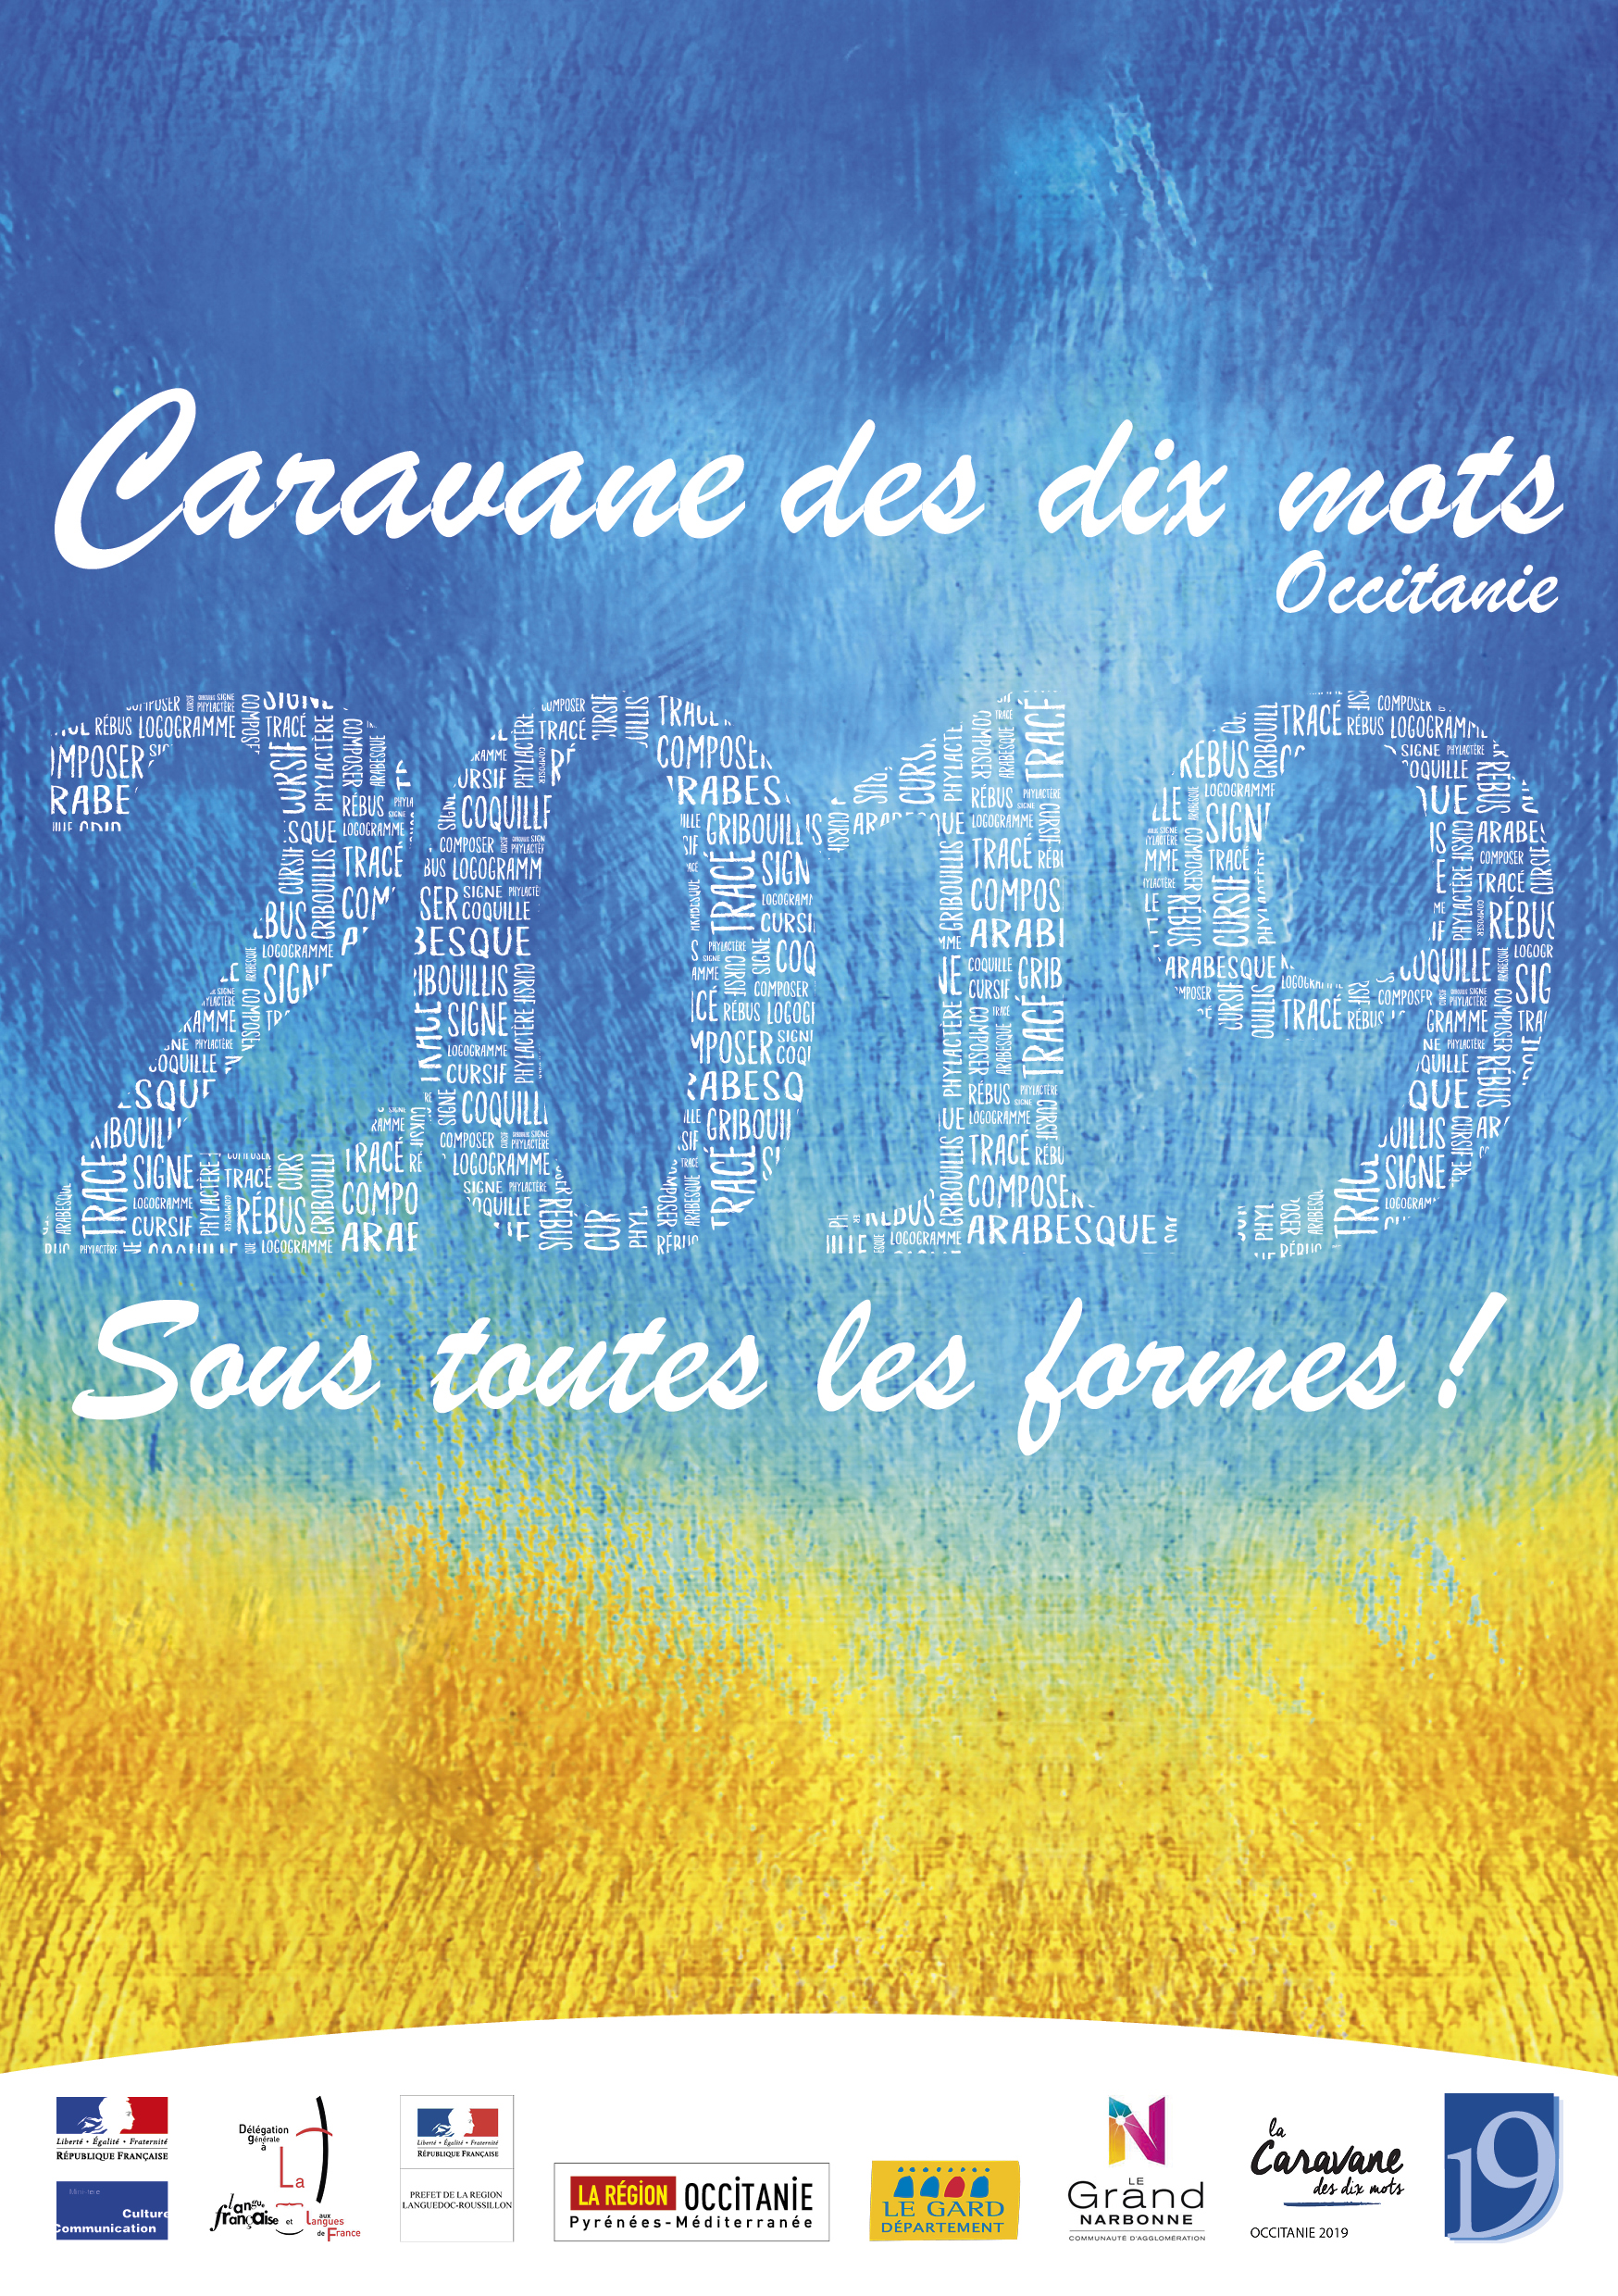 La Caravane des dix mots Occitanie 2019